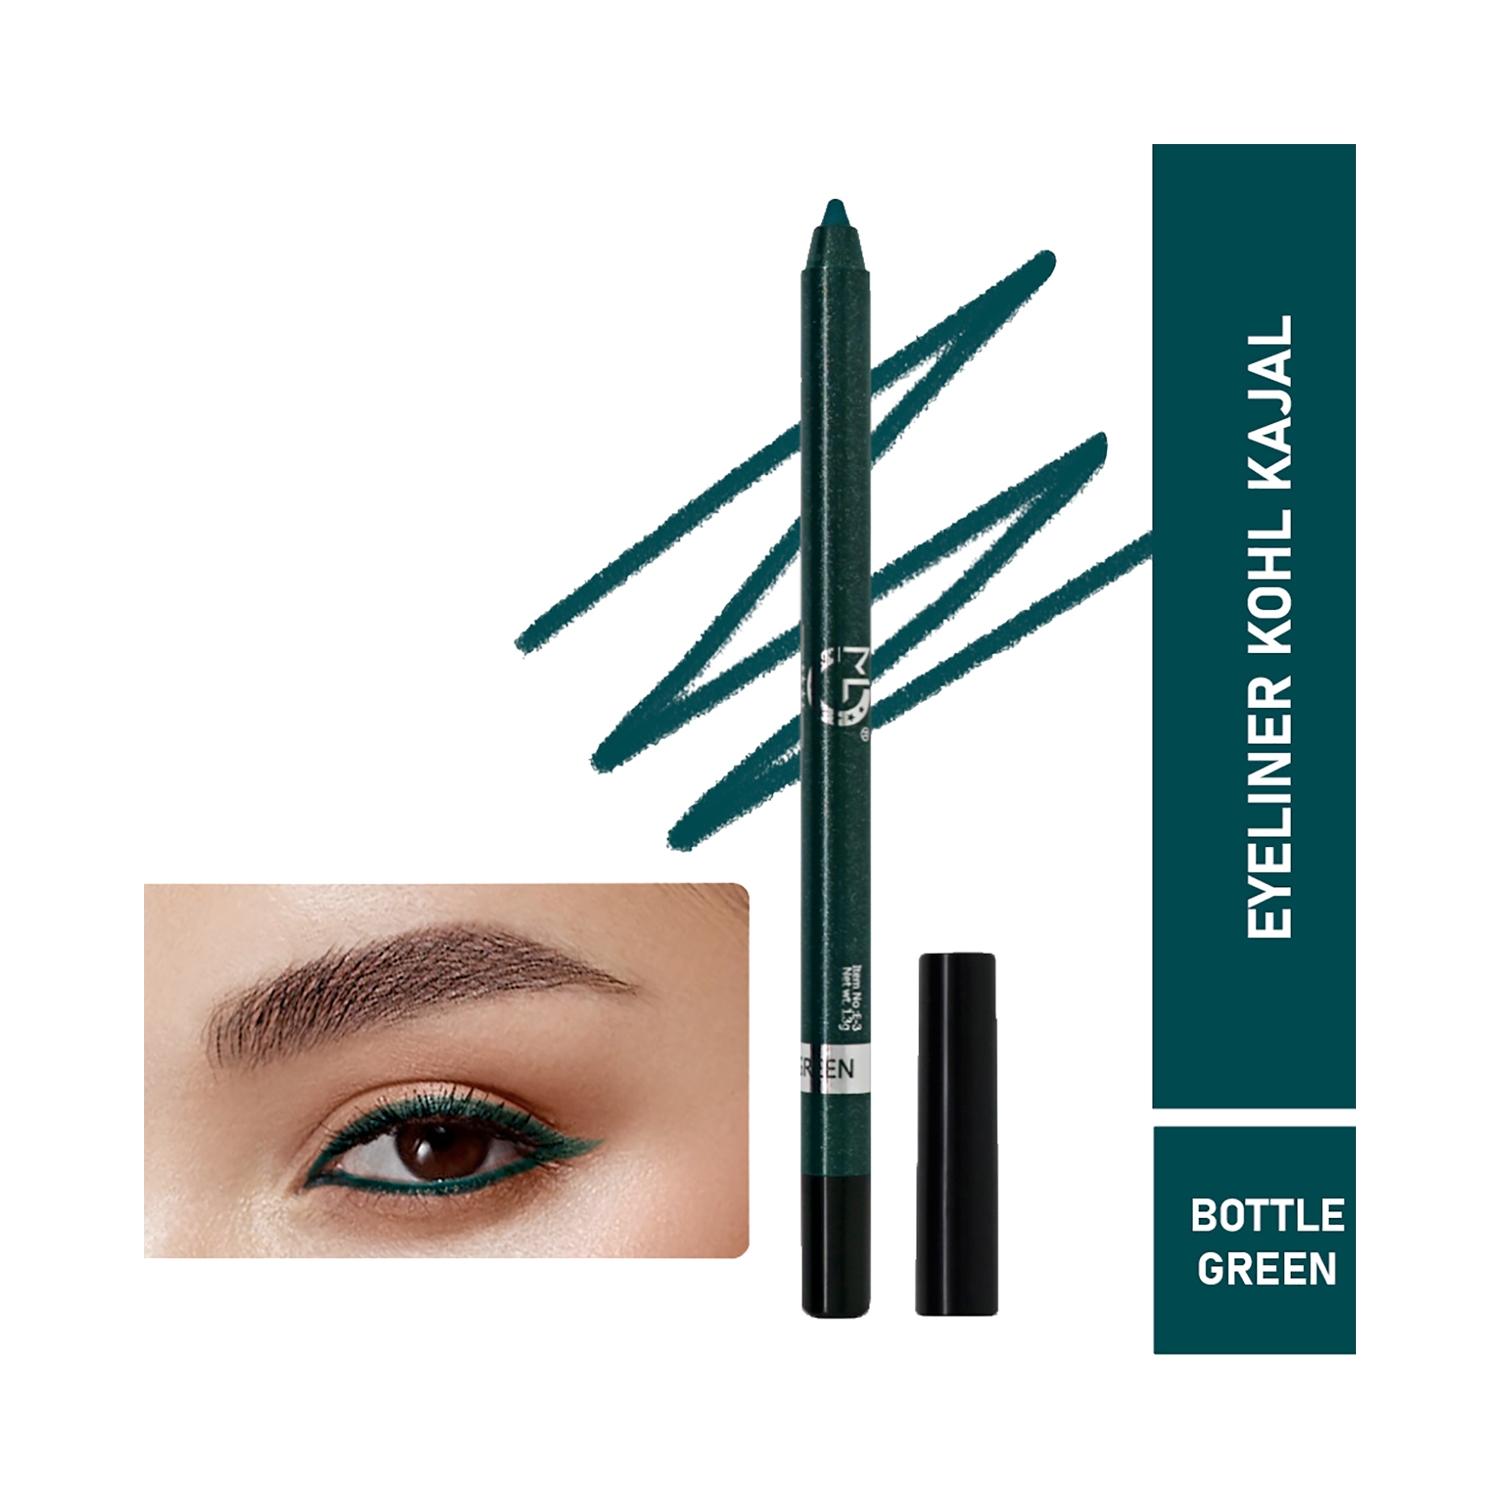 matt look single stroke super glide eyeliner kohl kajal - bottle green (1.3g)